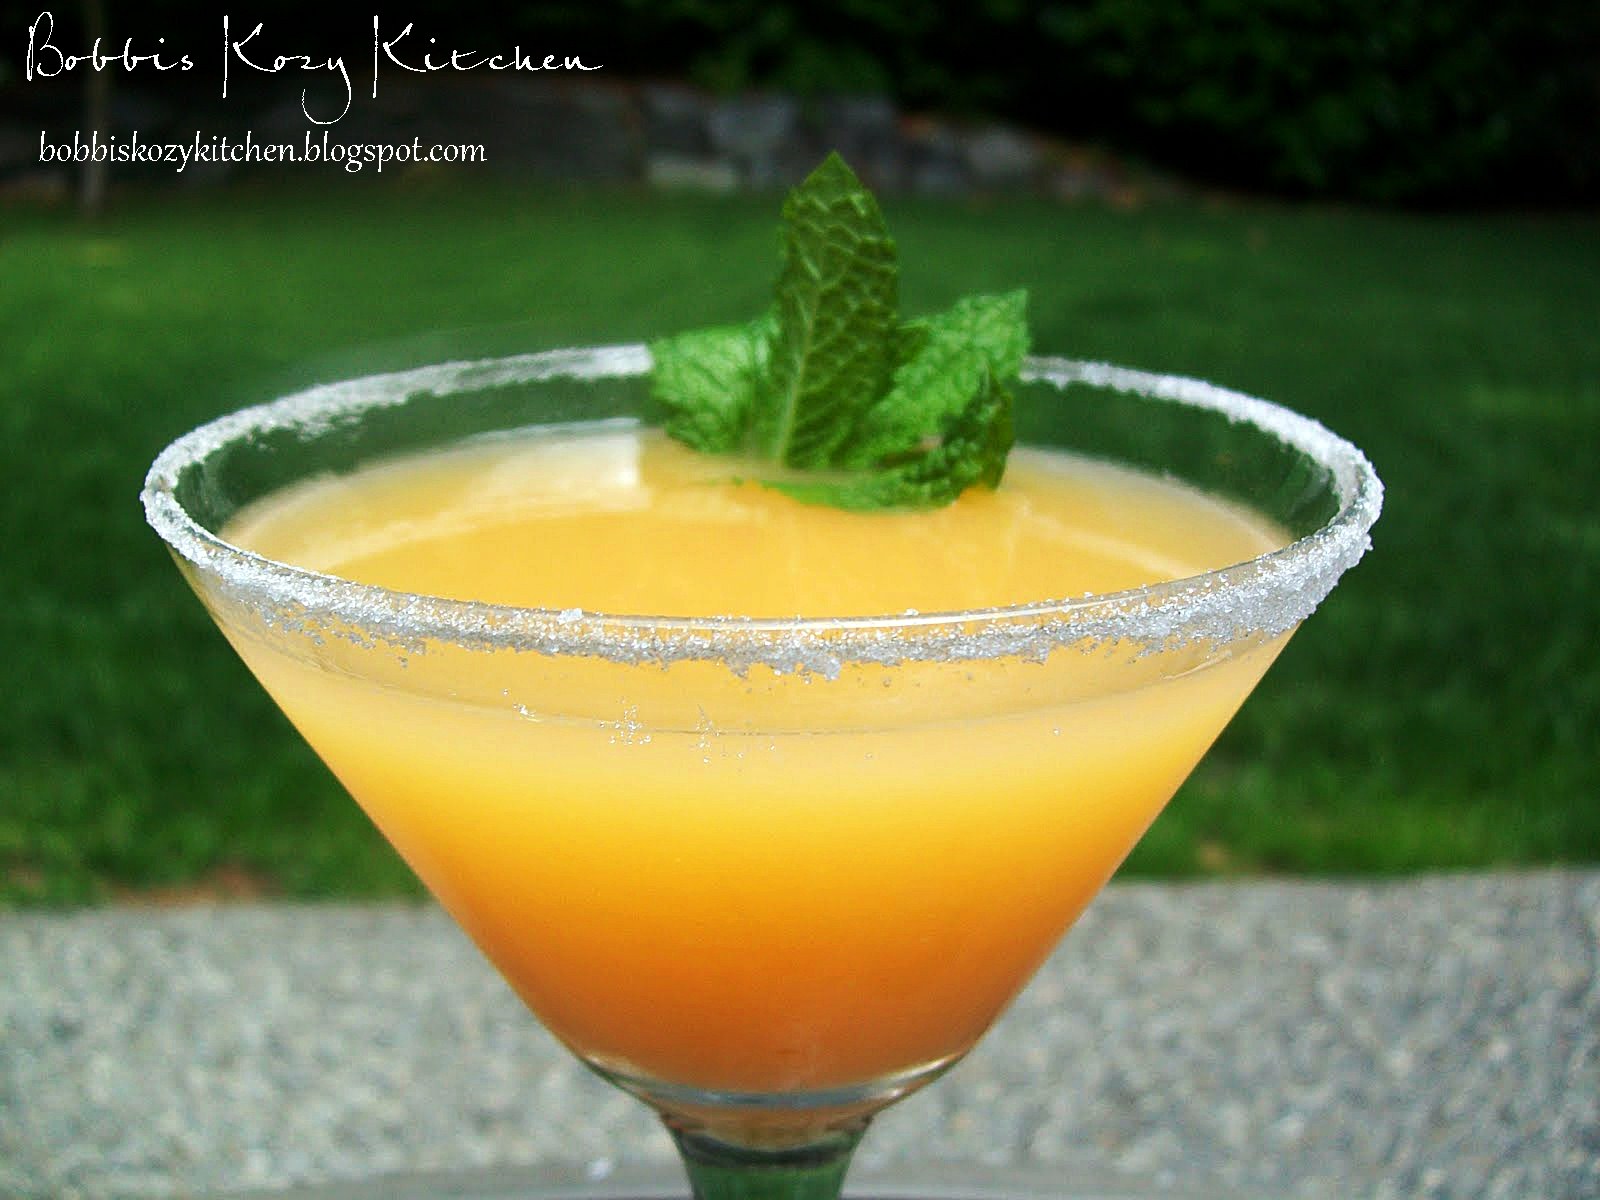 Bobbi's Kozy Kitchen: Tipsy Tuesday - Super Citrus Martini